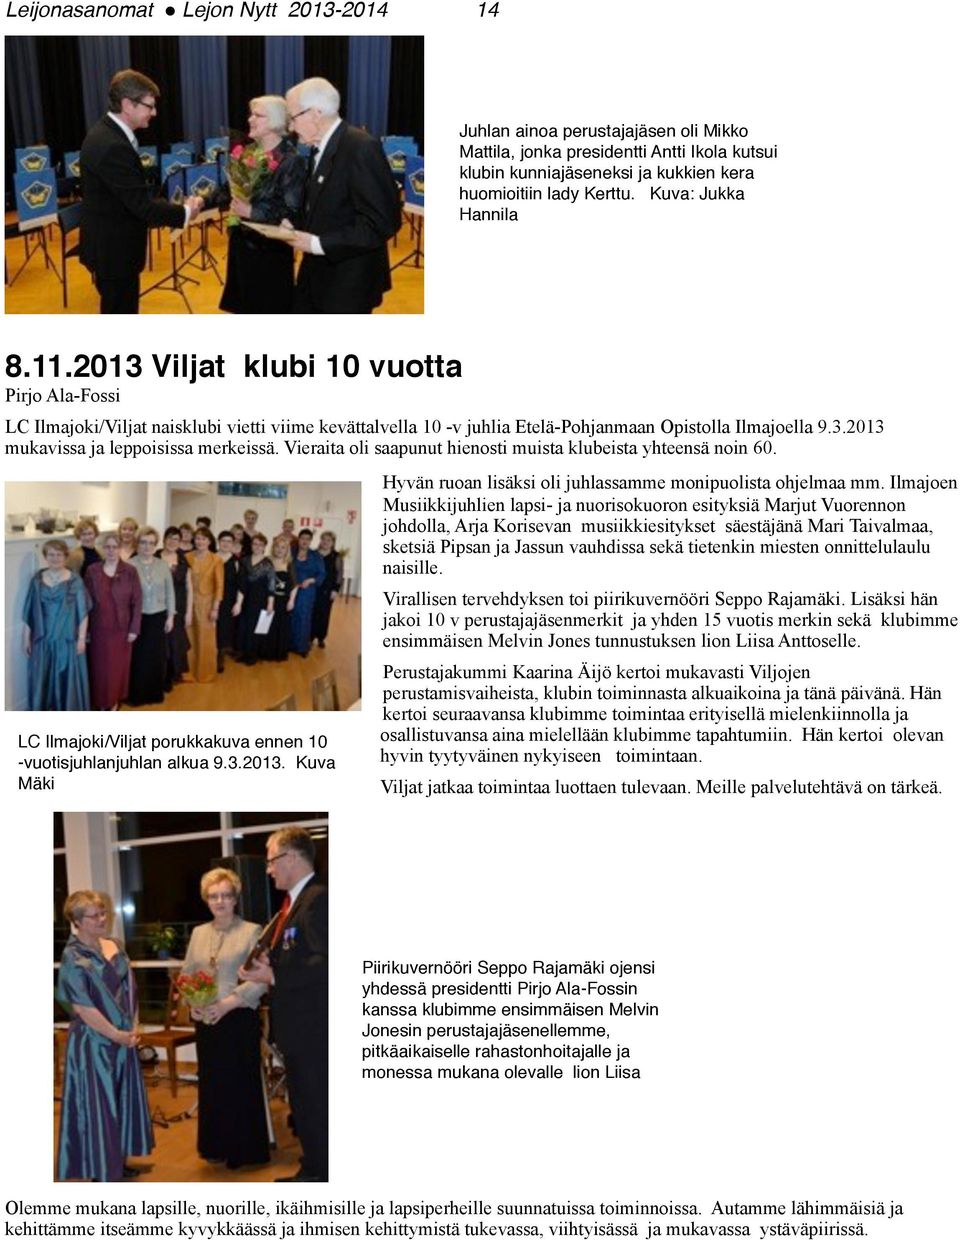 Vieraita oli saapunut hienosti muista klubeista yhteensä noin 60. LC Ilmajoki/Viljat porukkakuva ennen 10 -vuotisjuhlanjuhlan alkua 9.3.2013.